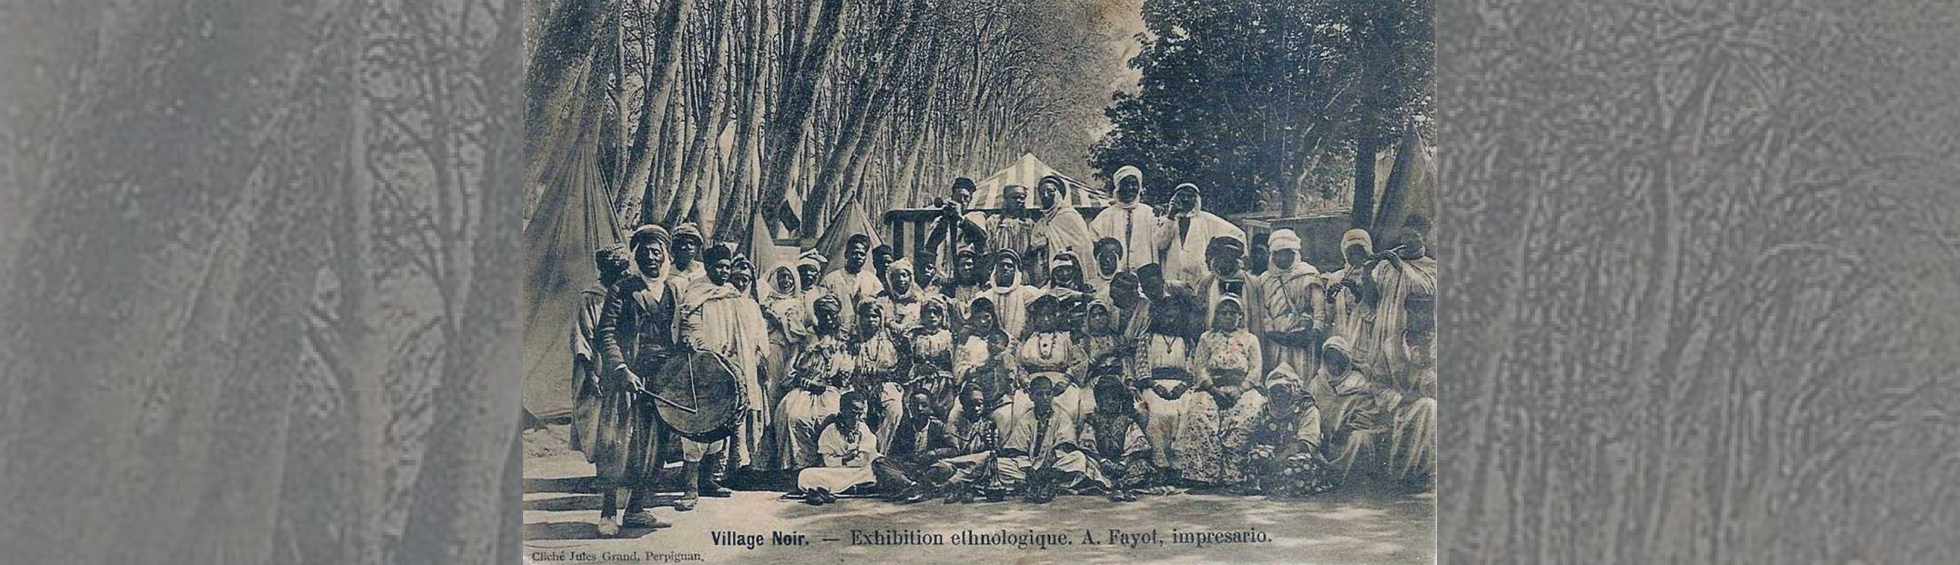 Population africaine en costume traditionnel et tambours lors d'une exhibition ethnologique